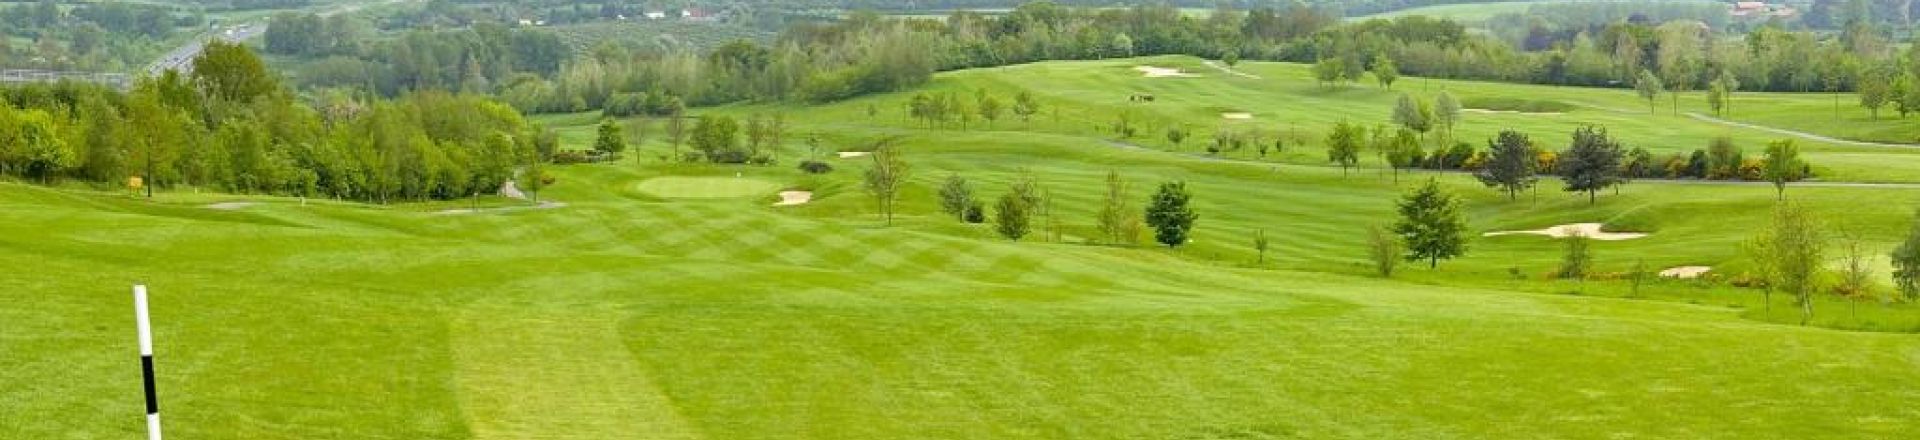 Donnington Grove Golf Course